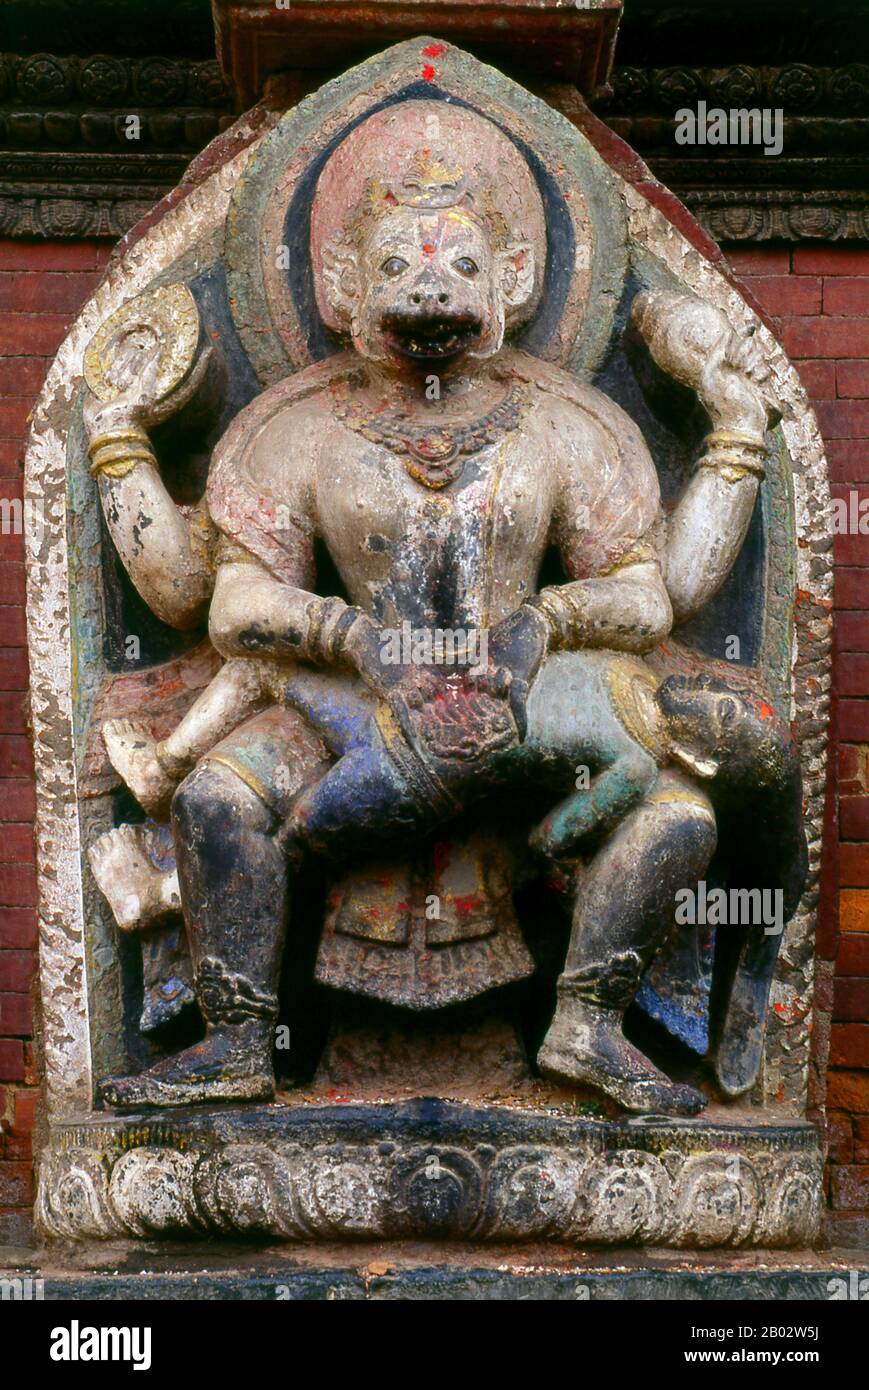 Narasimha, Narasingh, Narsingh und Narasingha in abgeleiteten Sprachen ist ein Avatar des hindu-gottes Vishnu, der auch der höchste gott Krishna und eine der beliebtesten Götter des Hinduismus ist, wie in frühen Epen, Ikonographie und Tempel- und Festanbetung für über ein Jahrtausend belegt ist. Stockfoto